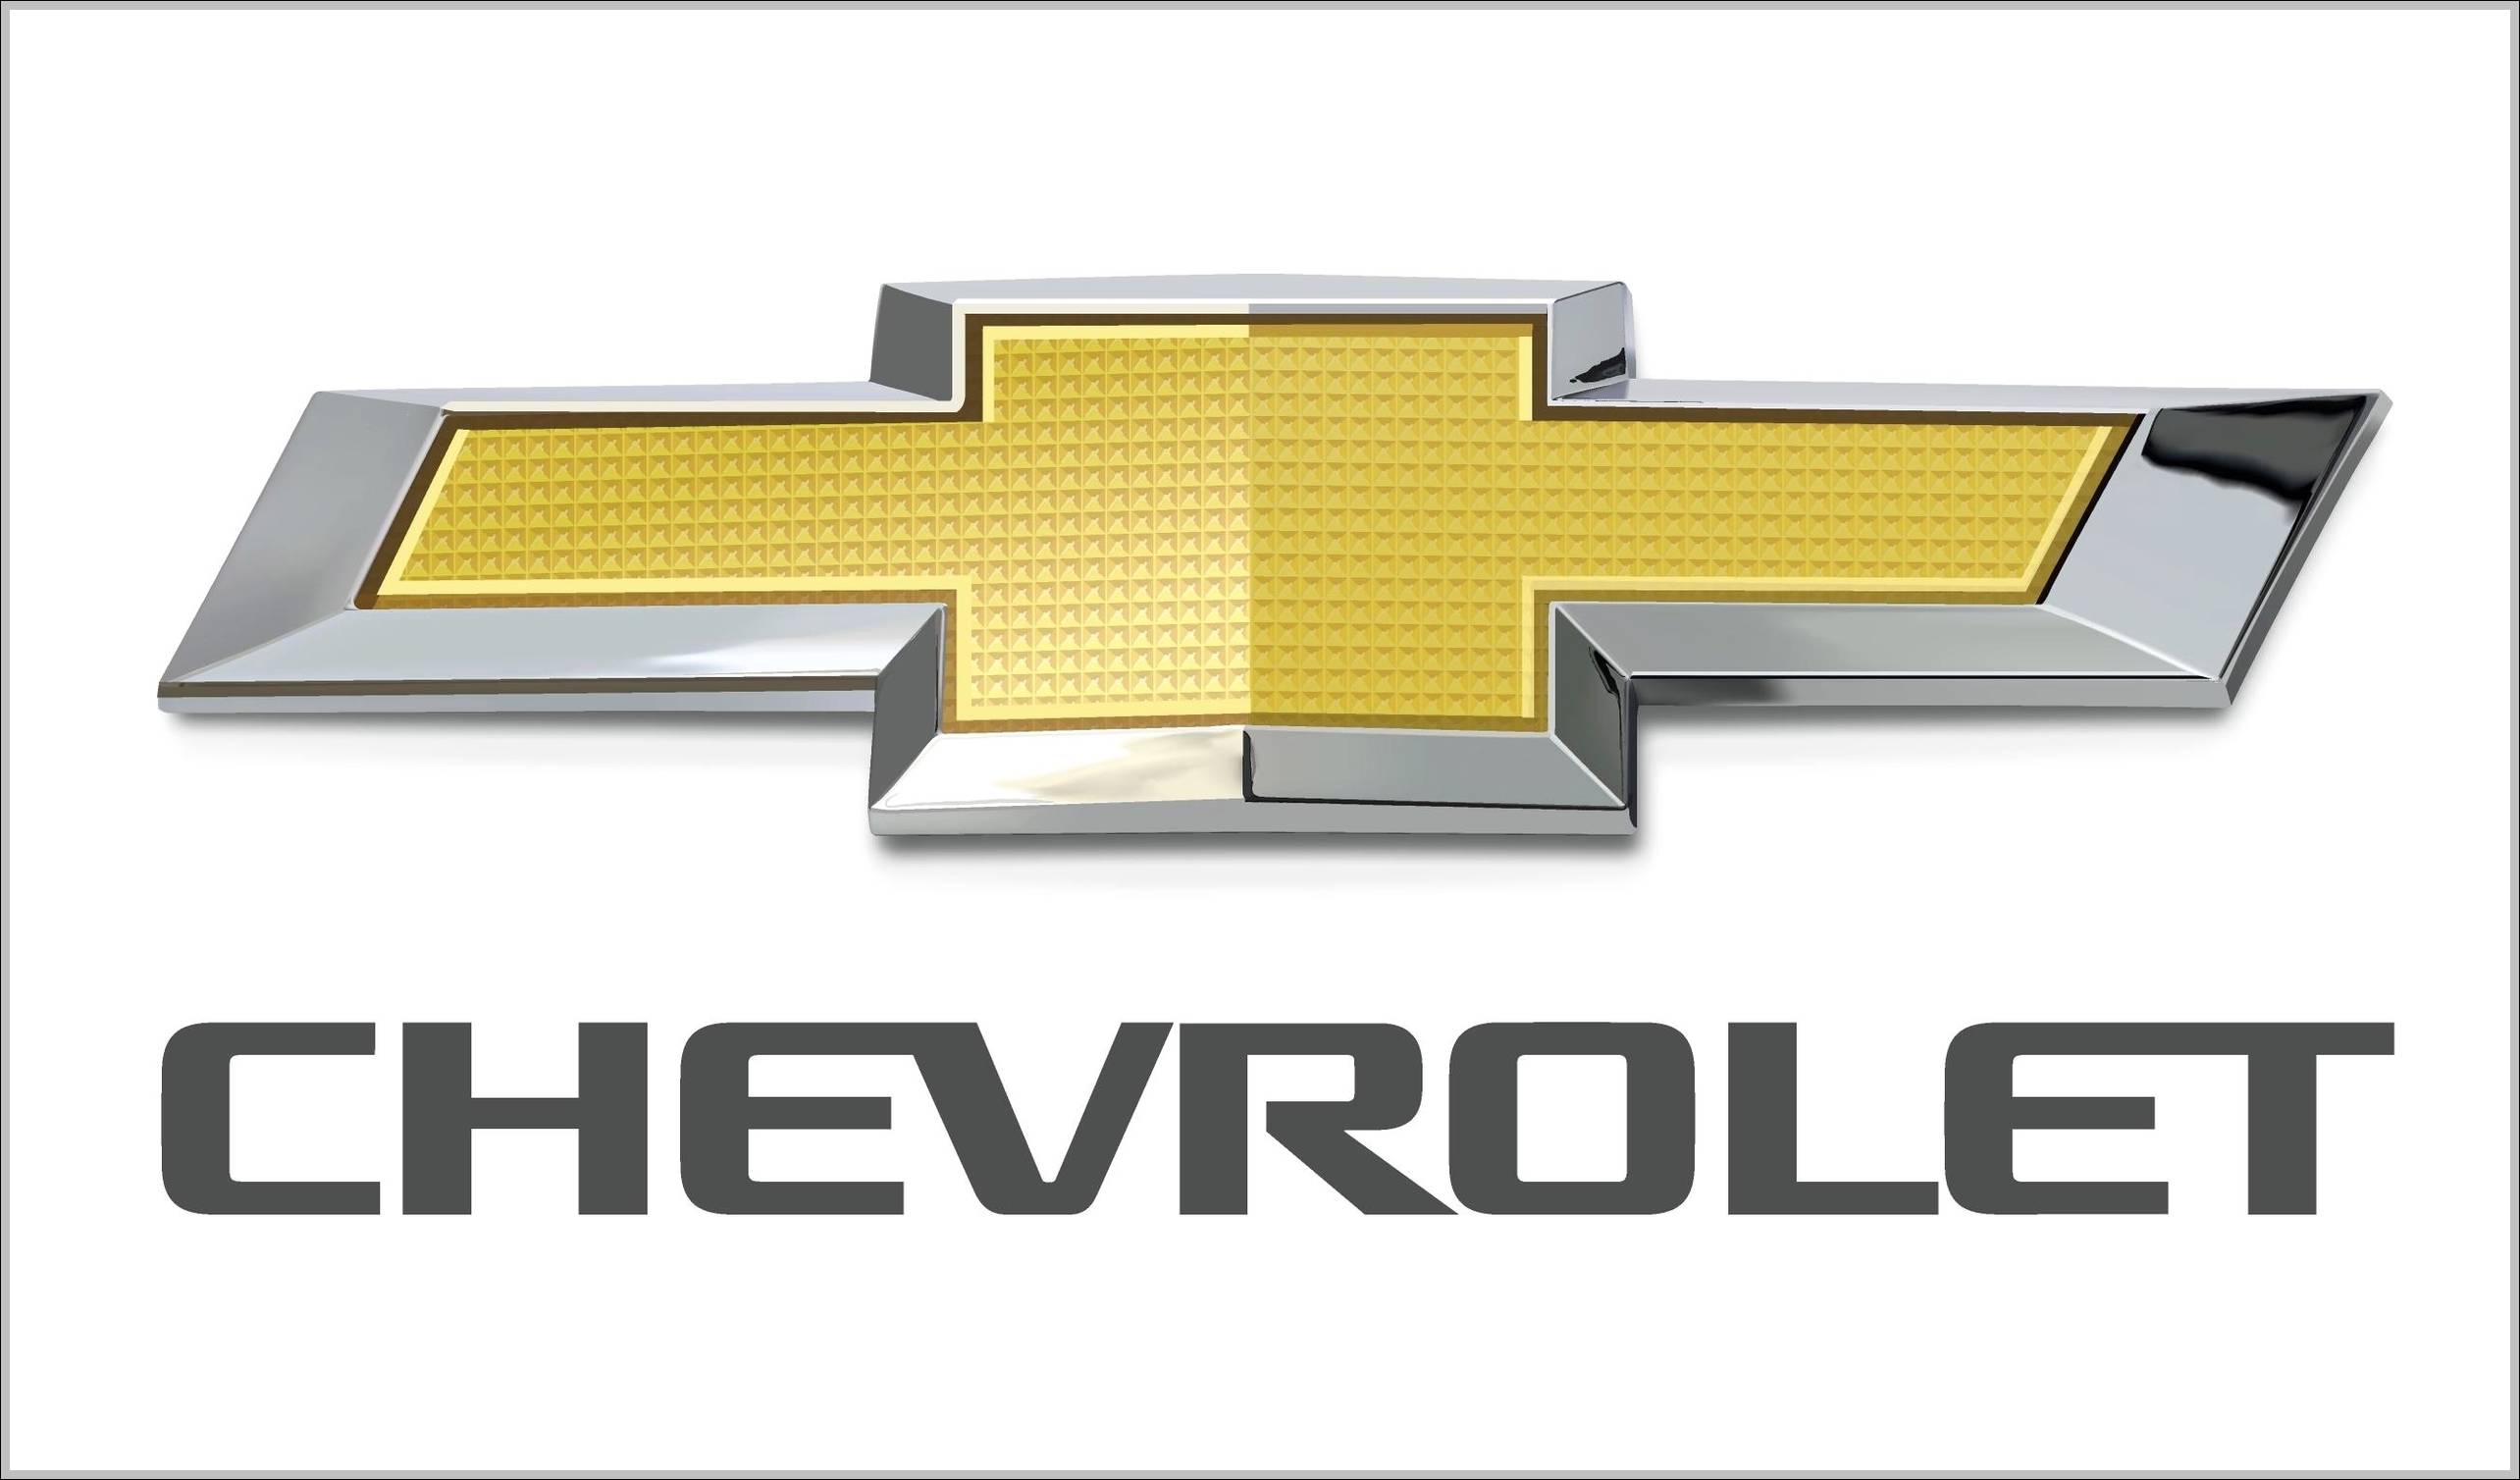 Chevrolet Logo - Chevrolet logo 2013 | Logo Sign - Logos, Signs, Symbols, Trademarks ...